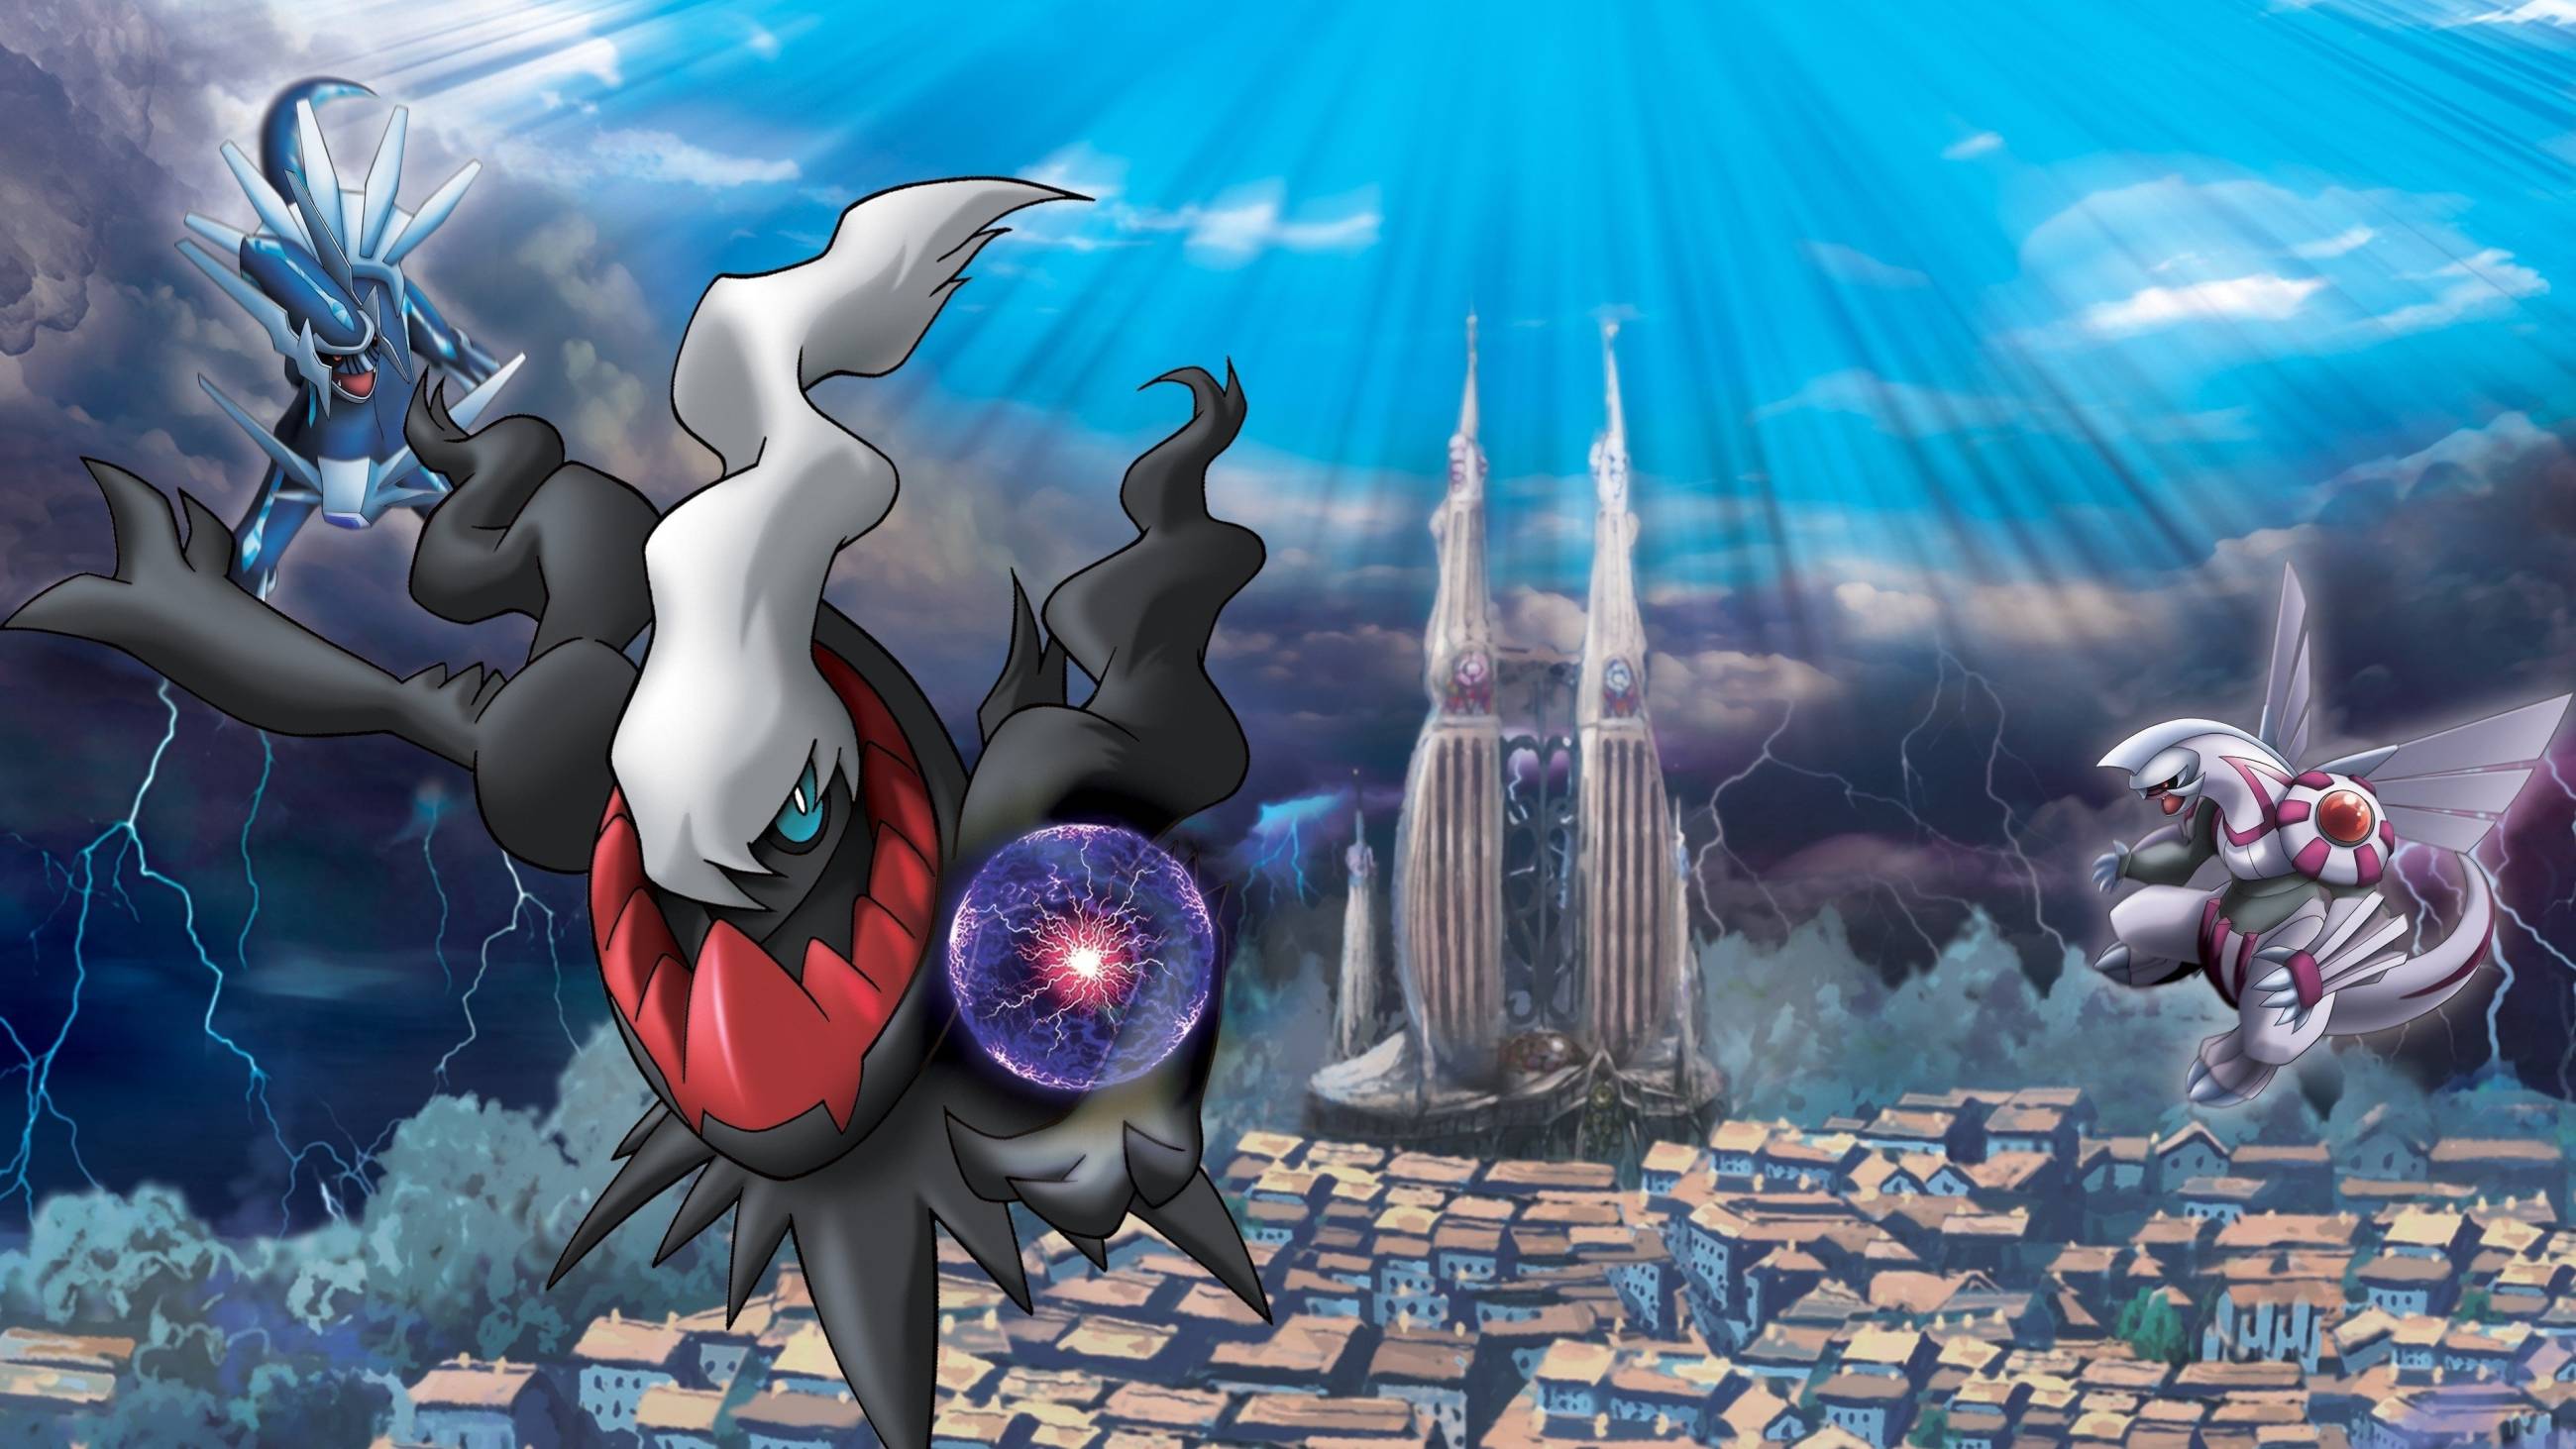 Cubierta de Pokémon 10: El desafío de Darkrai